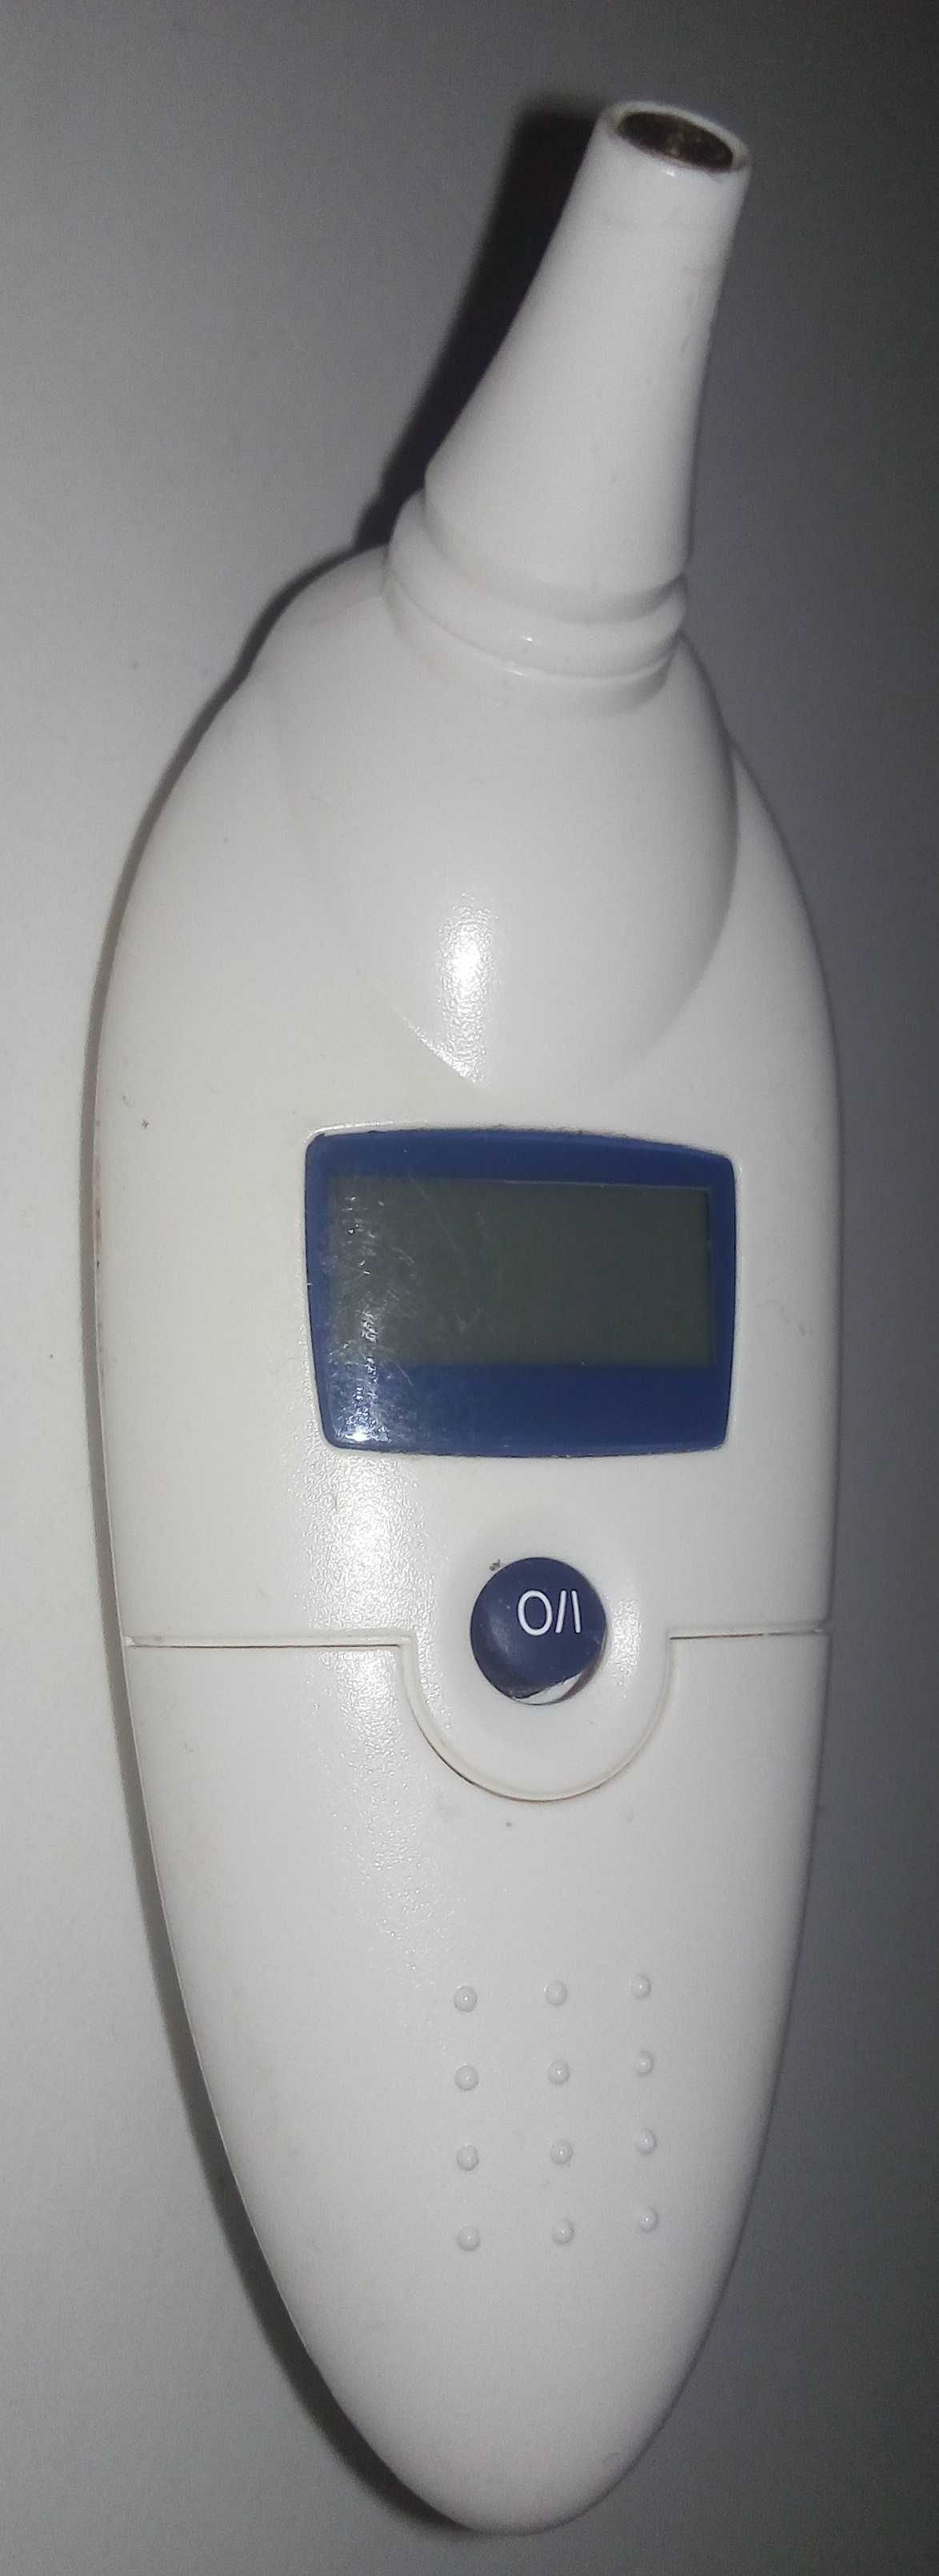 Инфракрасный термометр электронный ушной d2270 mothercare (Англия)